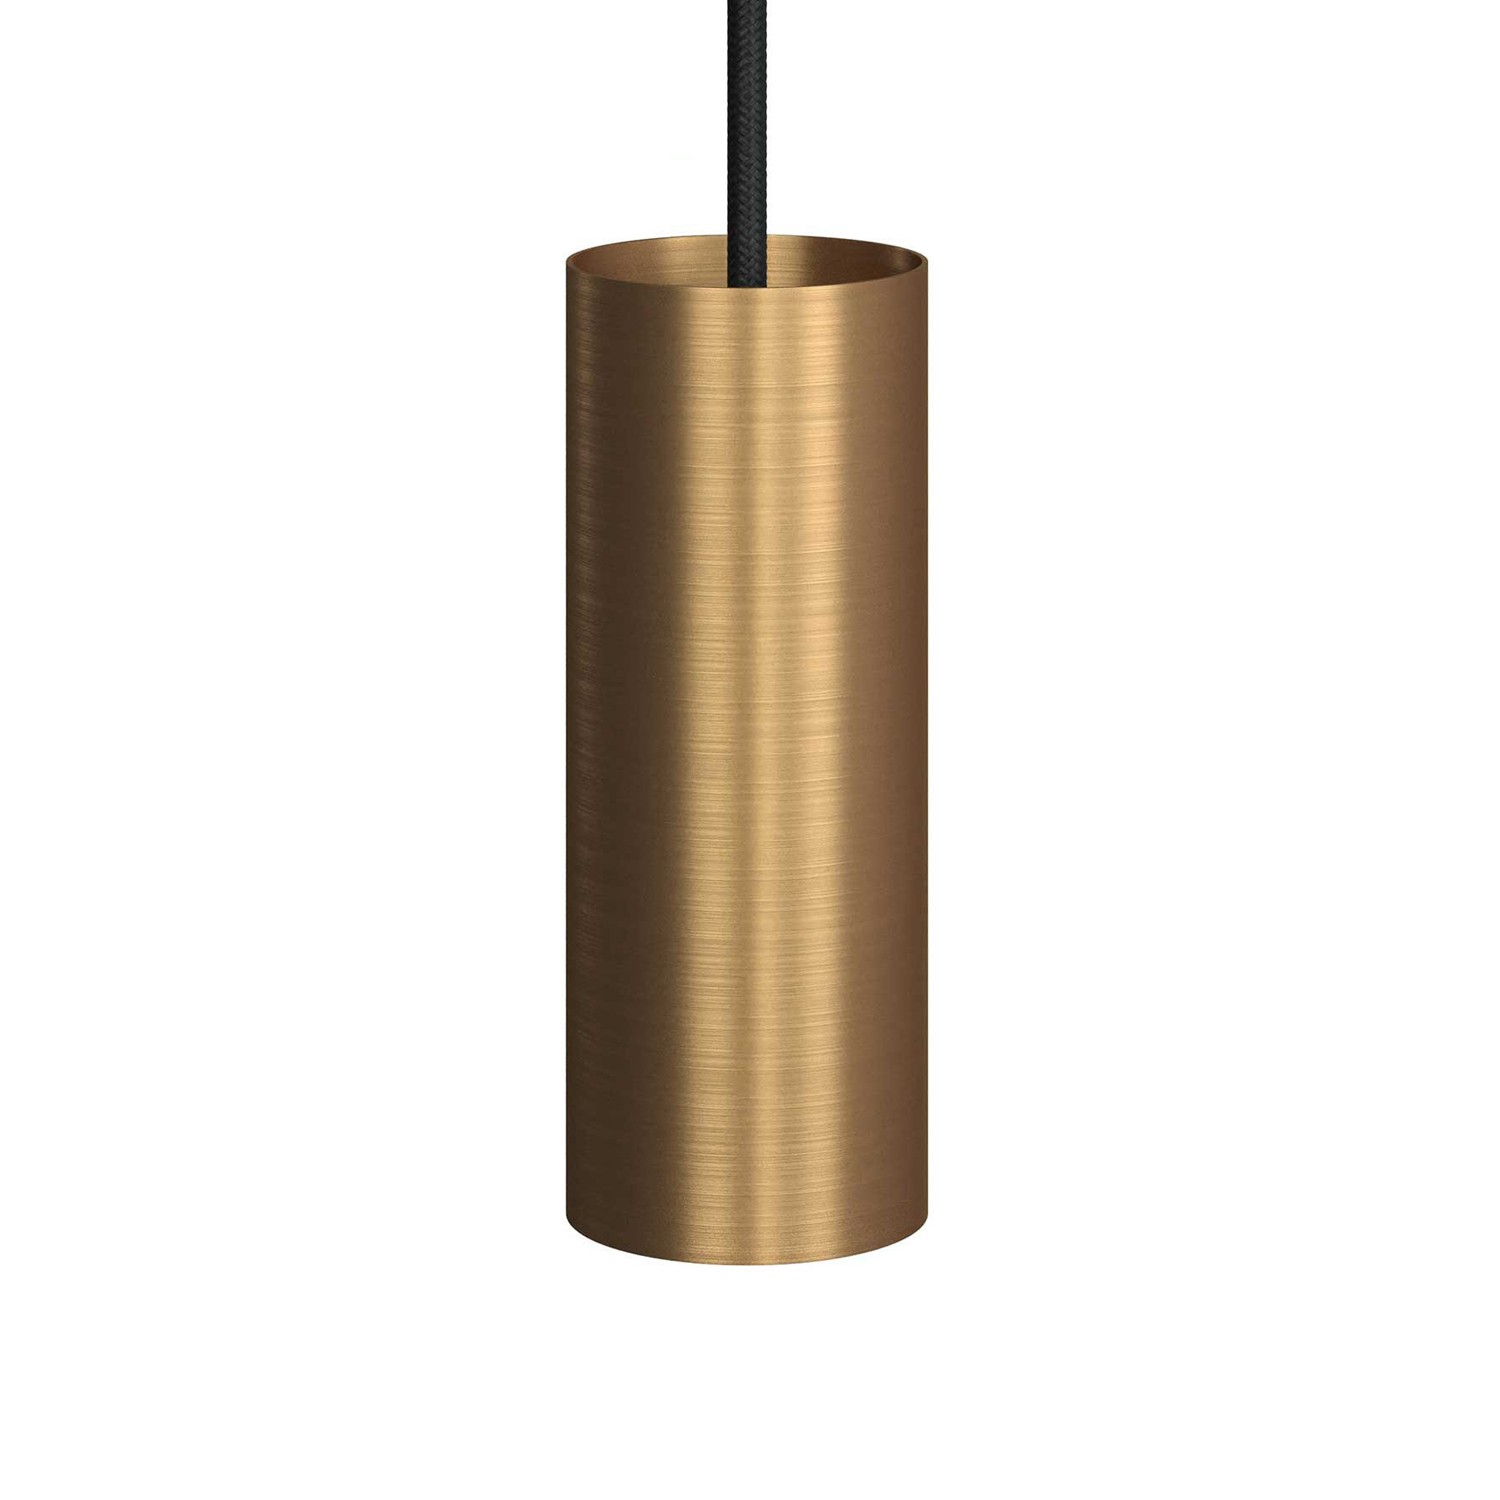 Tub-E14, spotlightrør med E14 dobbelt ferrule lampeholder